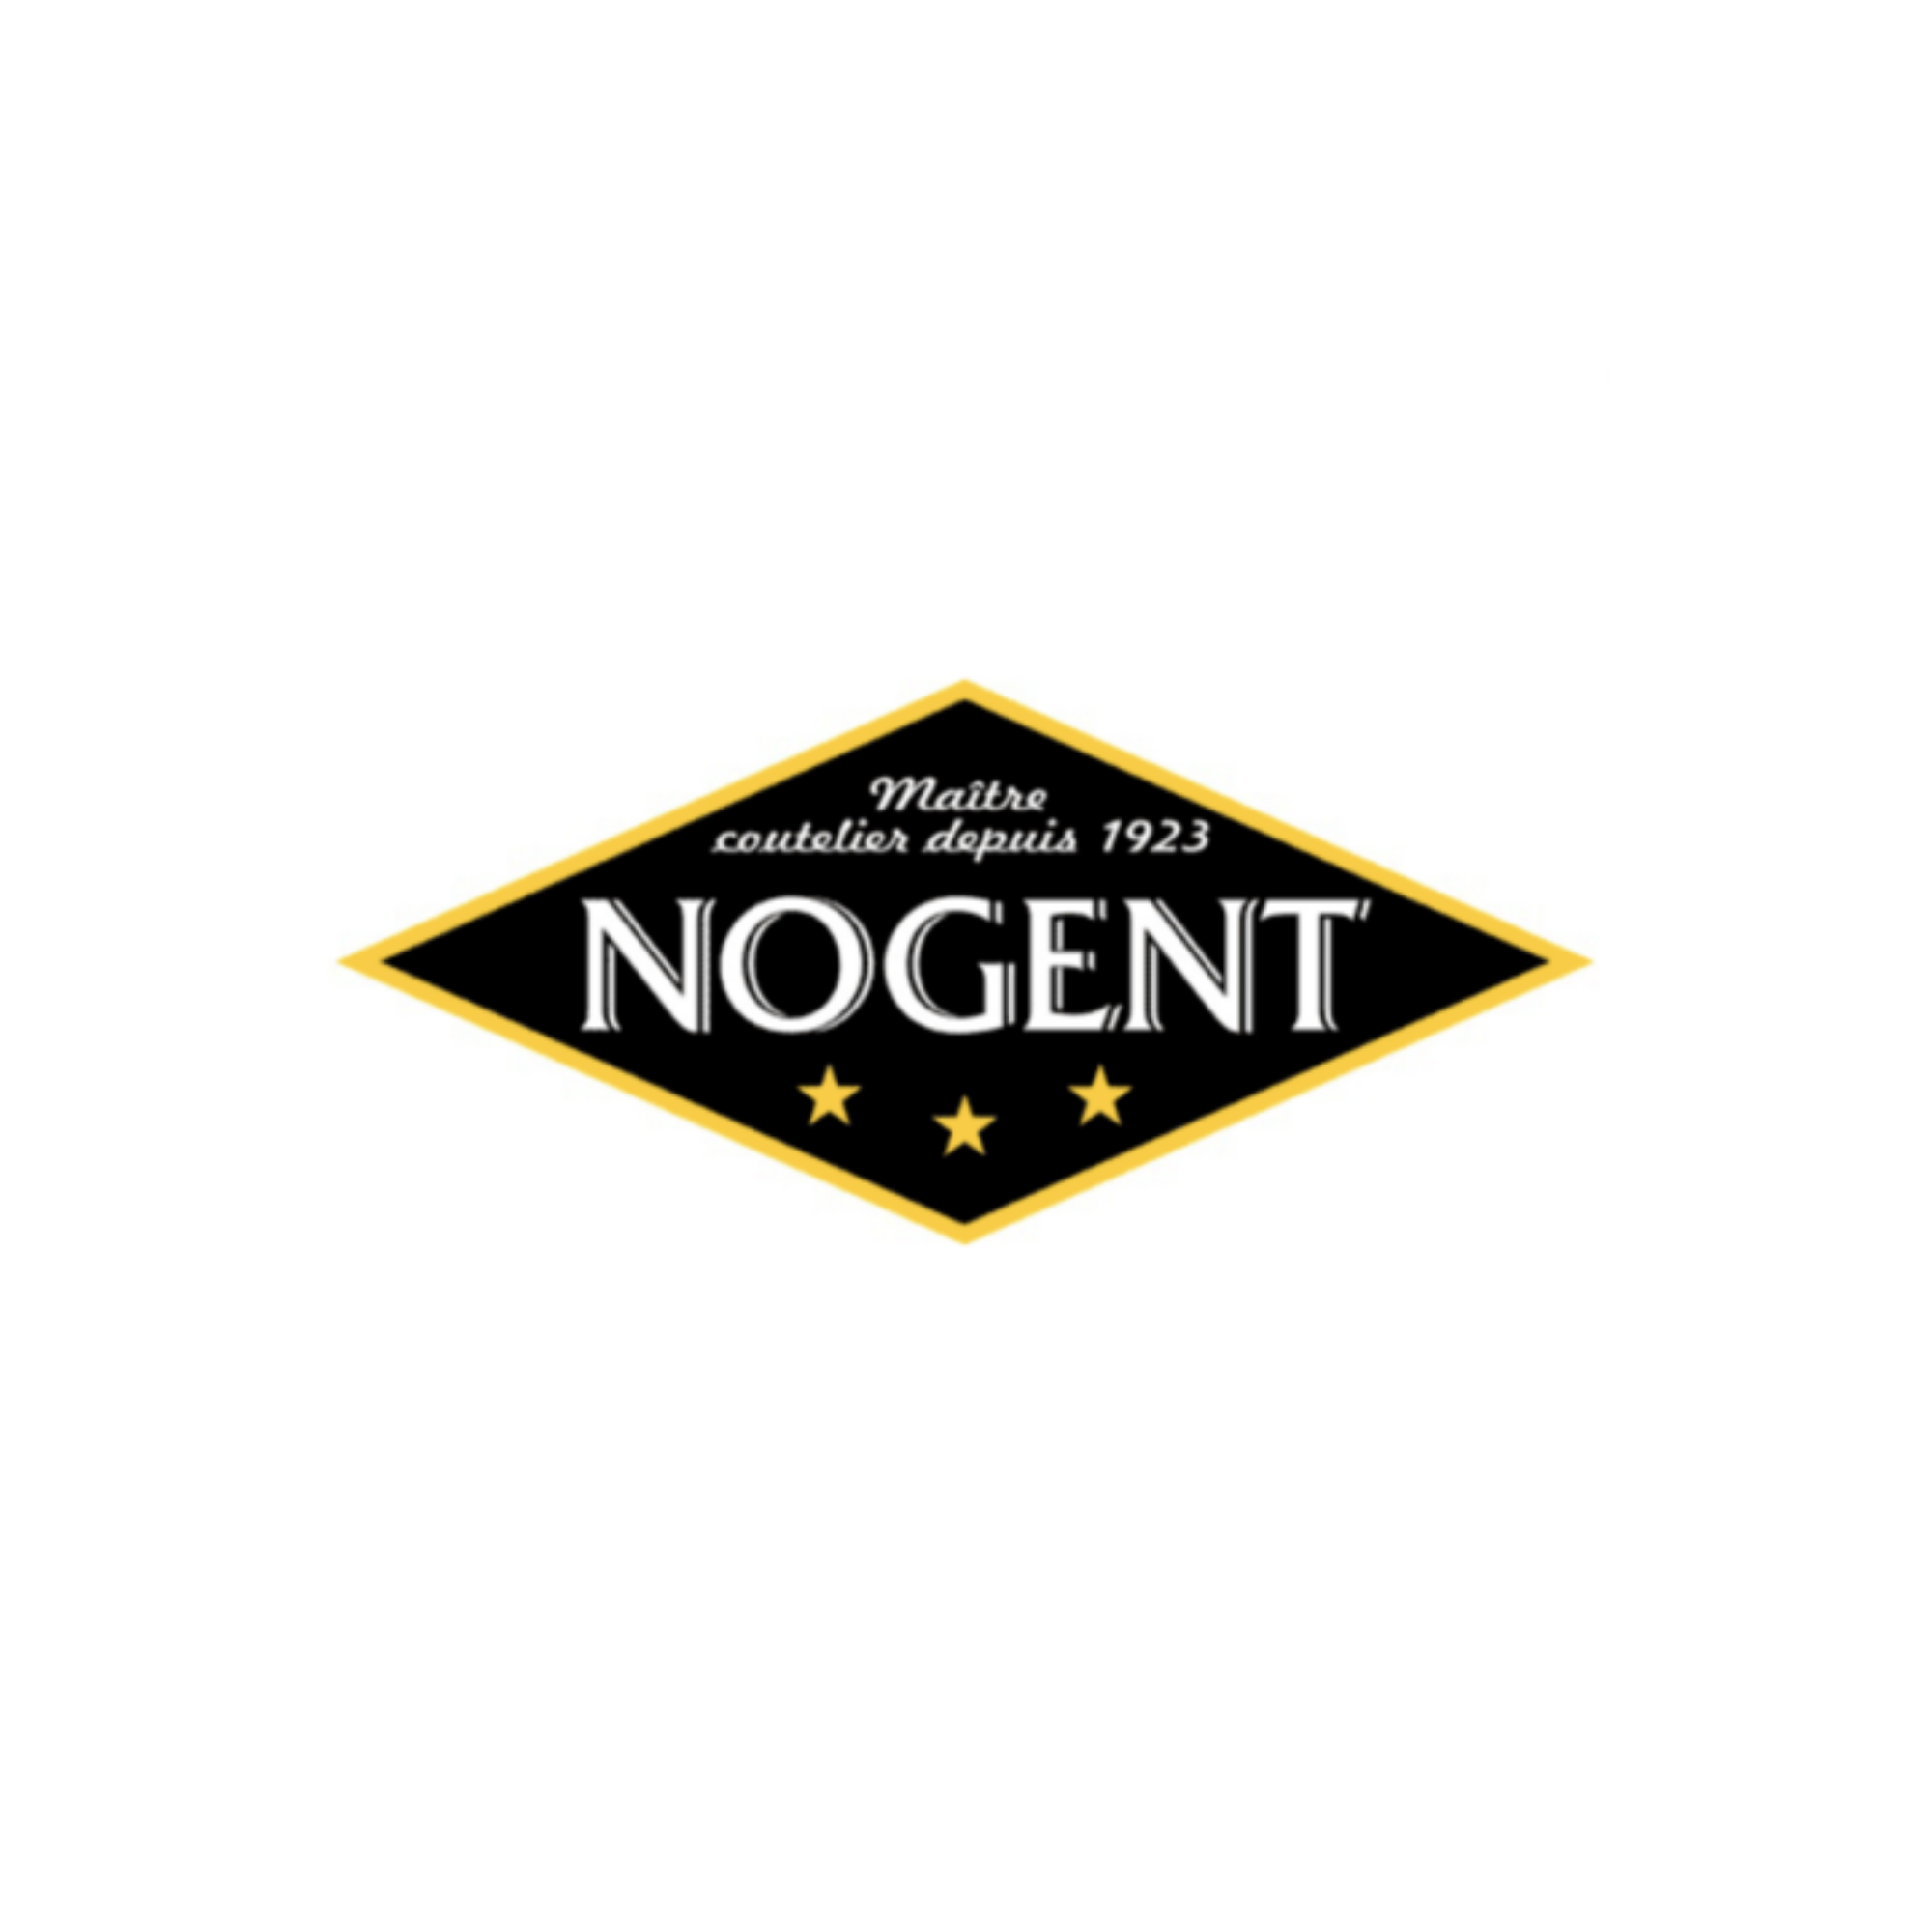 Nogent since 1923 logo